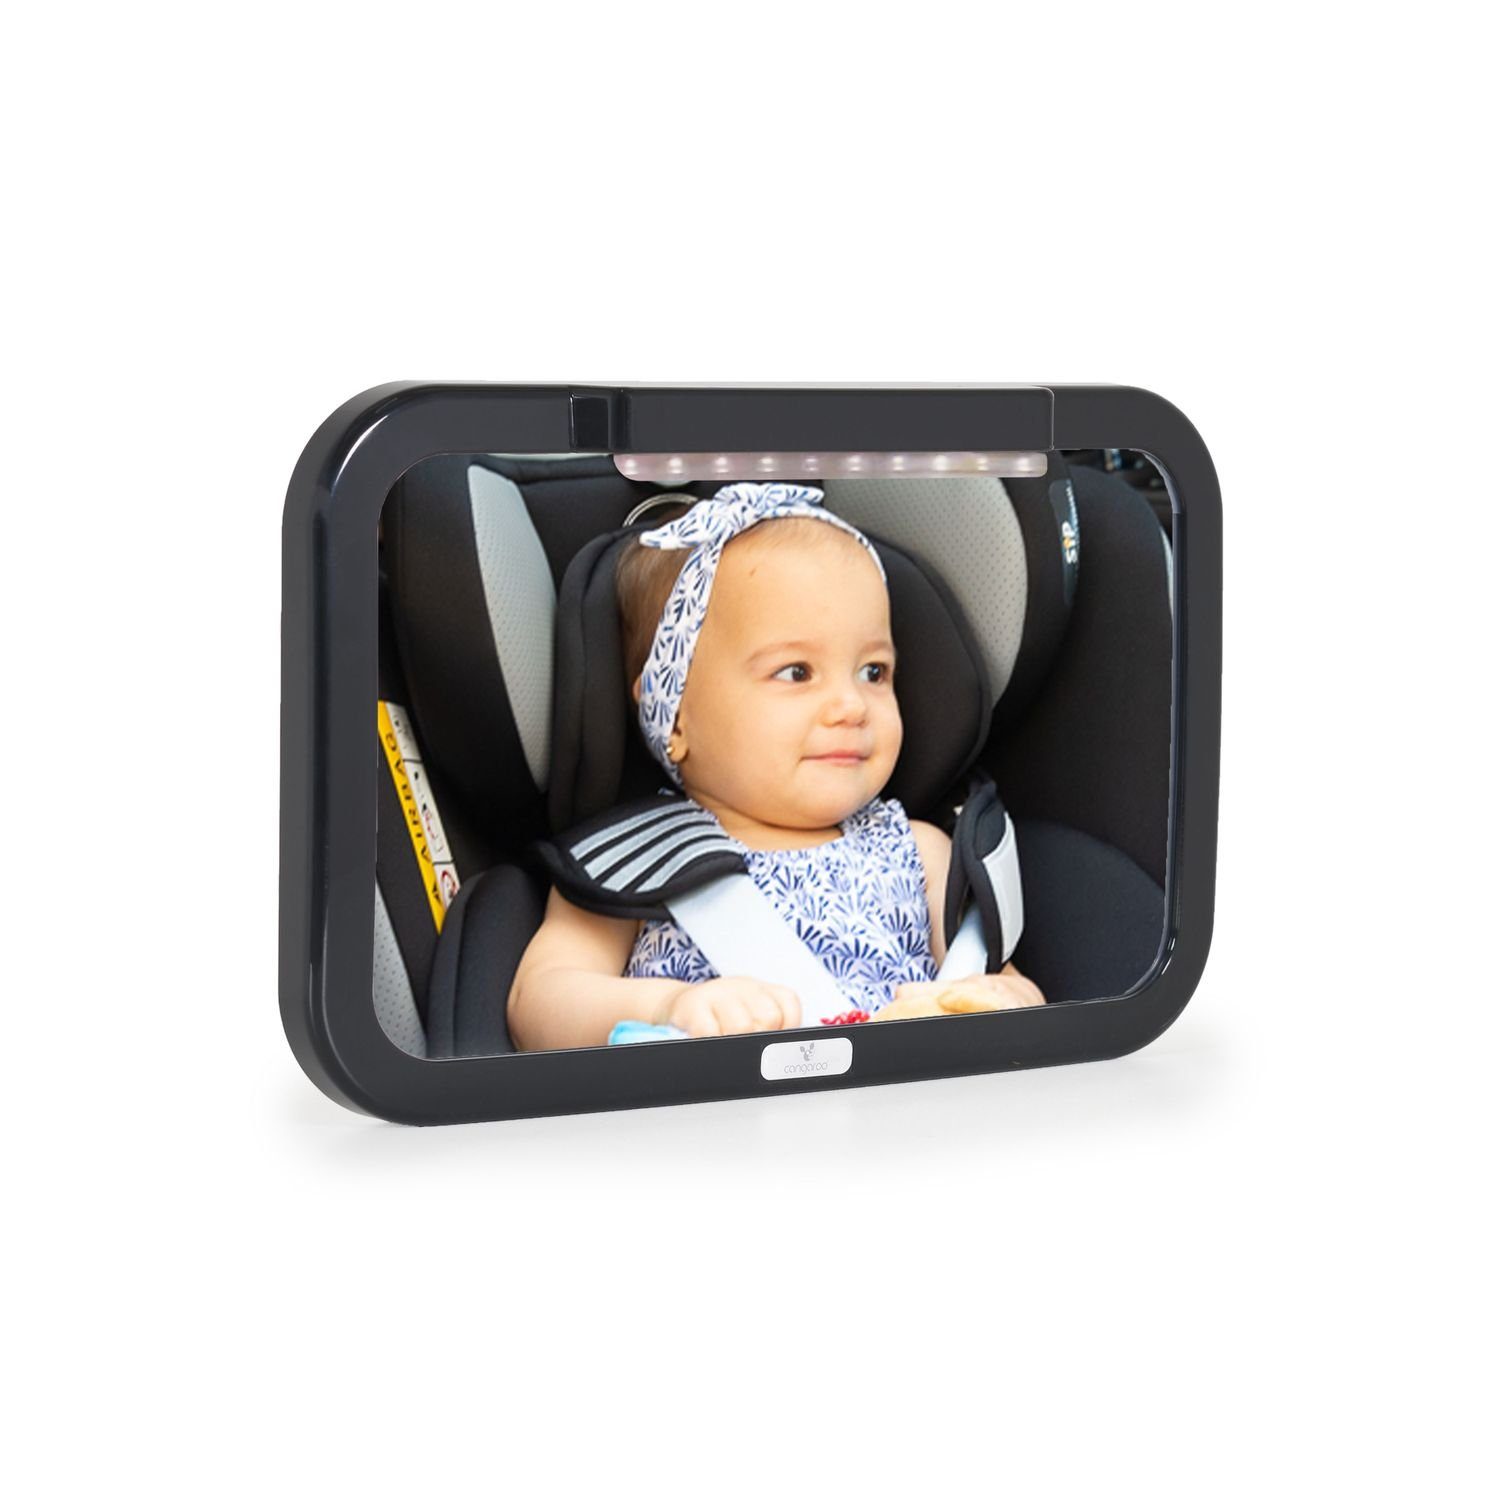 Cangaroo Autokindersitz LED-Licht, Fernbedienung verstellbar Rücksitzspiegel Autospiegel Kinder